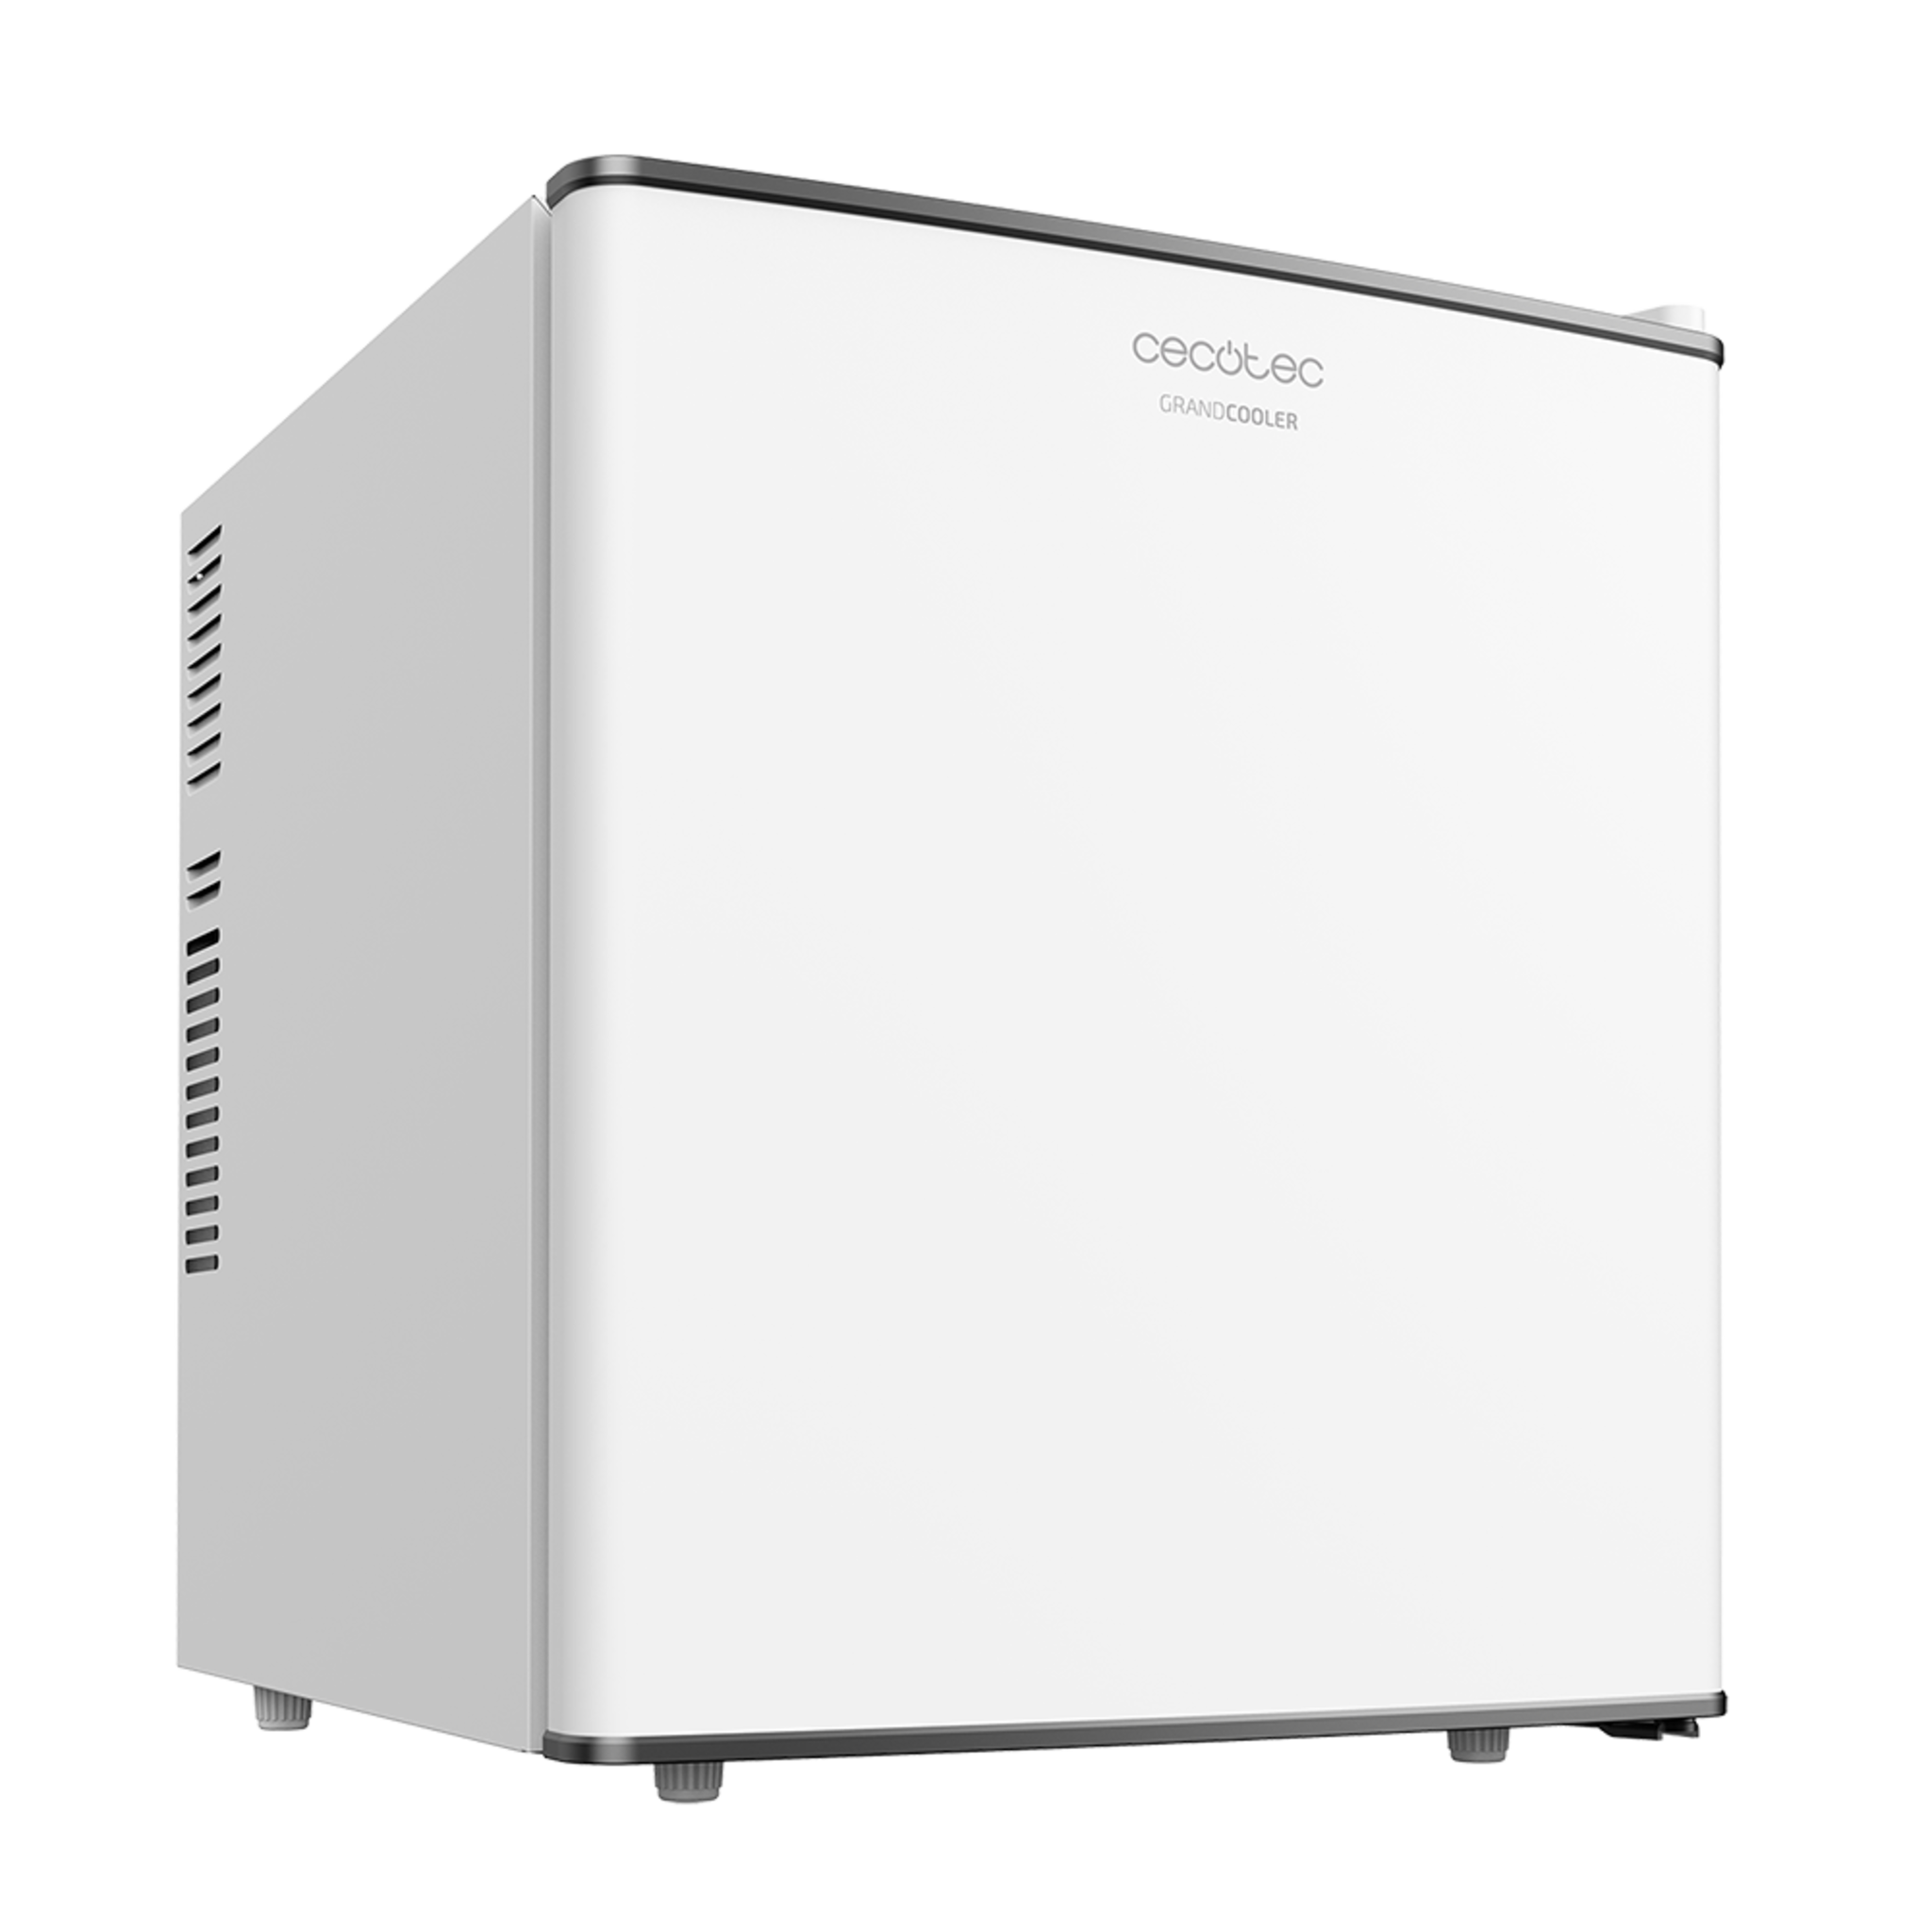 Minibar GrandCooler 10000 Silent White da 46 l di capacità, efficienza energetica A+, tecnologia termoelettrica, silenzioso, con luce LED interna e sistema Auto Defrost.